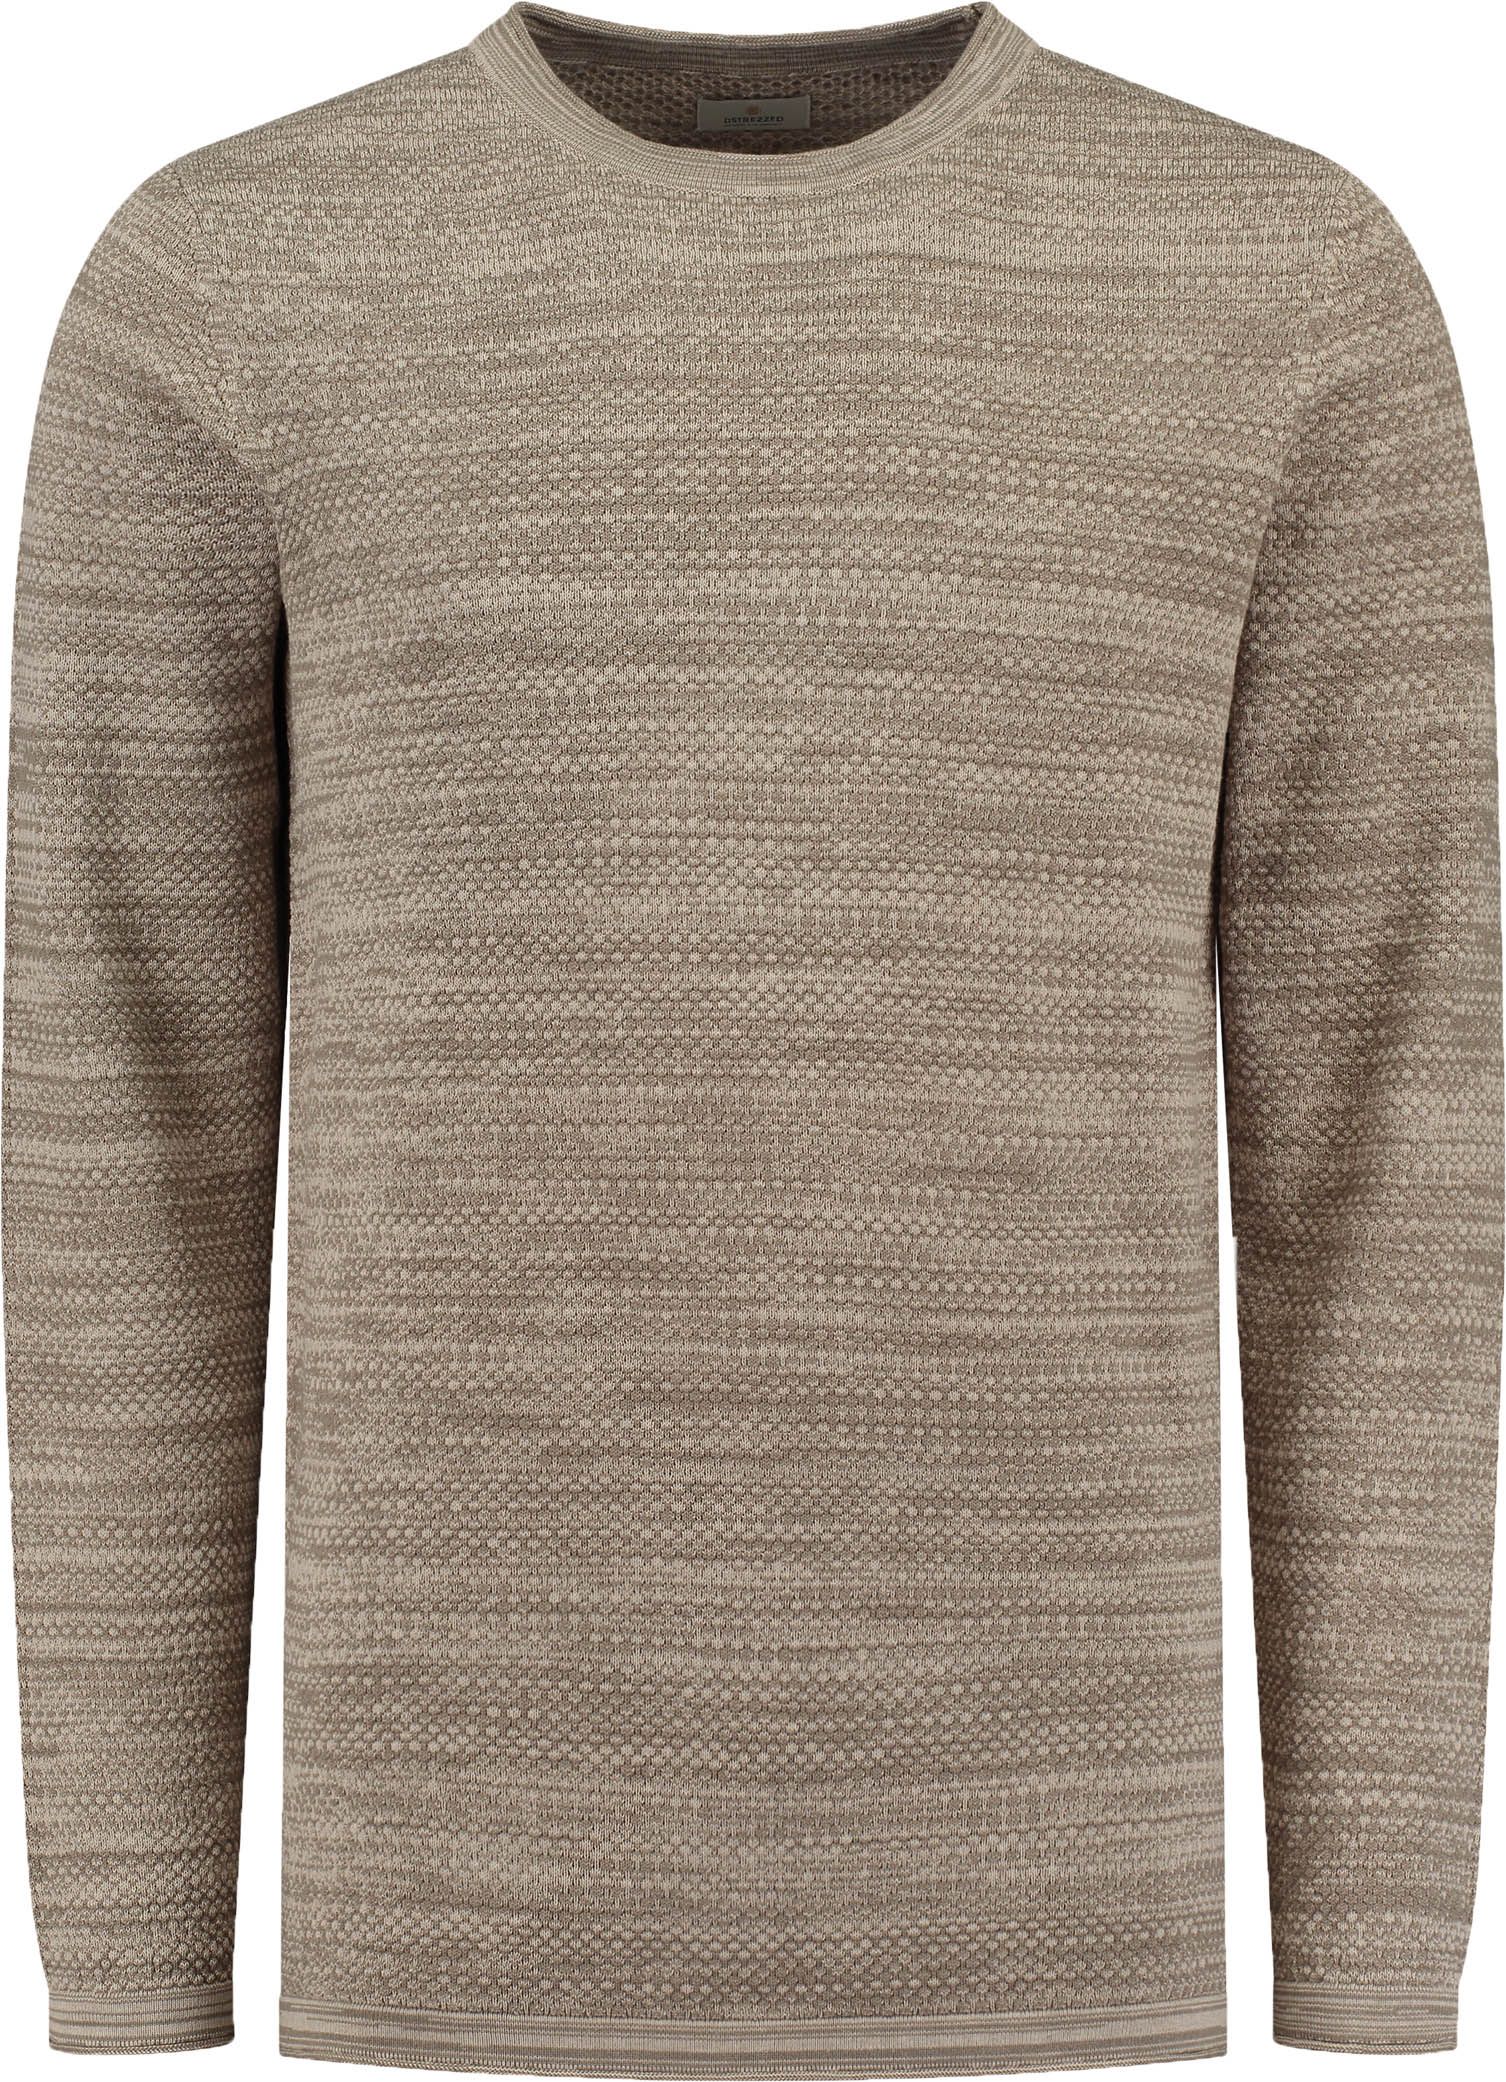 Dstrezzed Sweater Beige size L